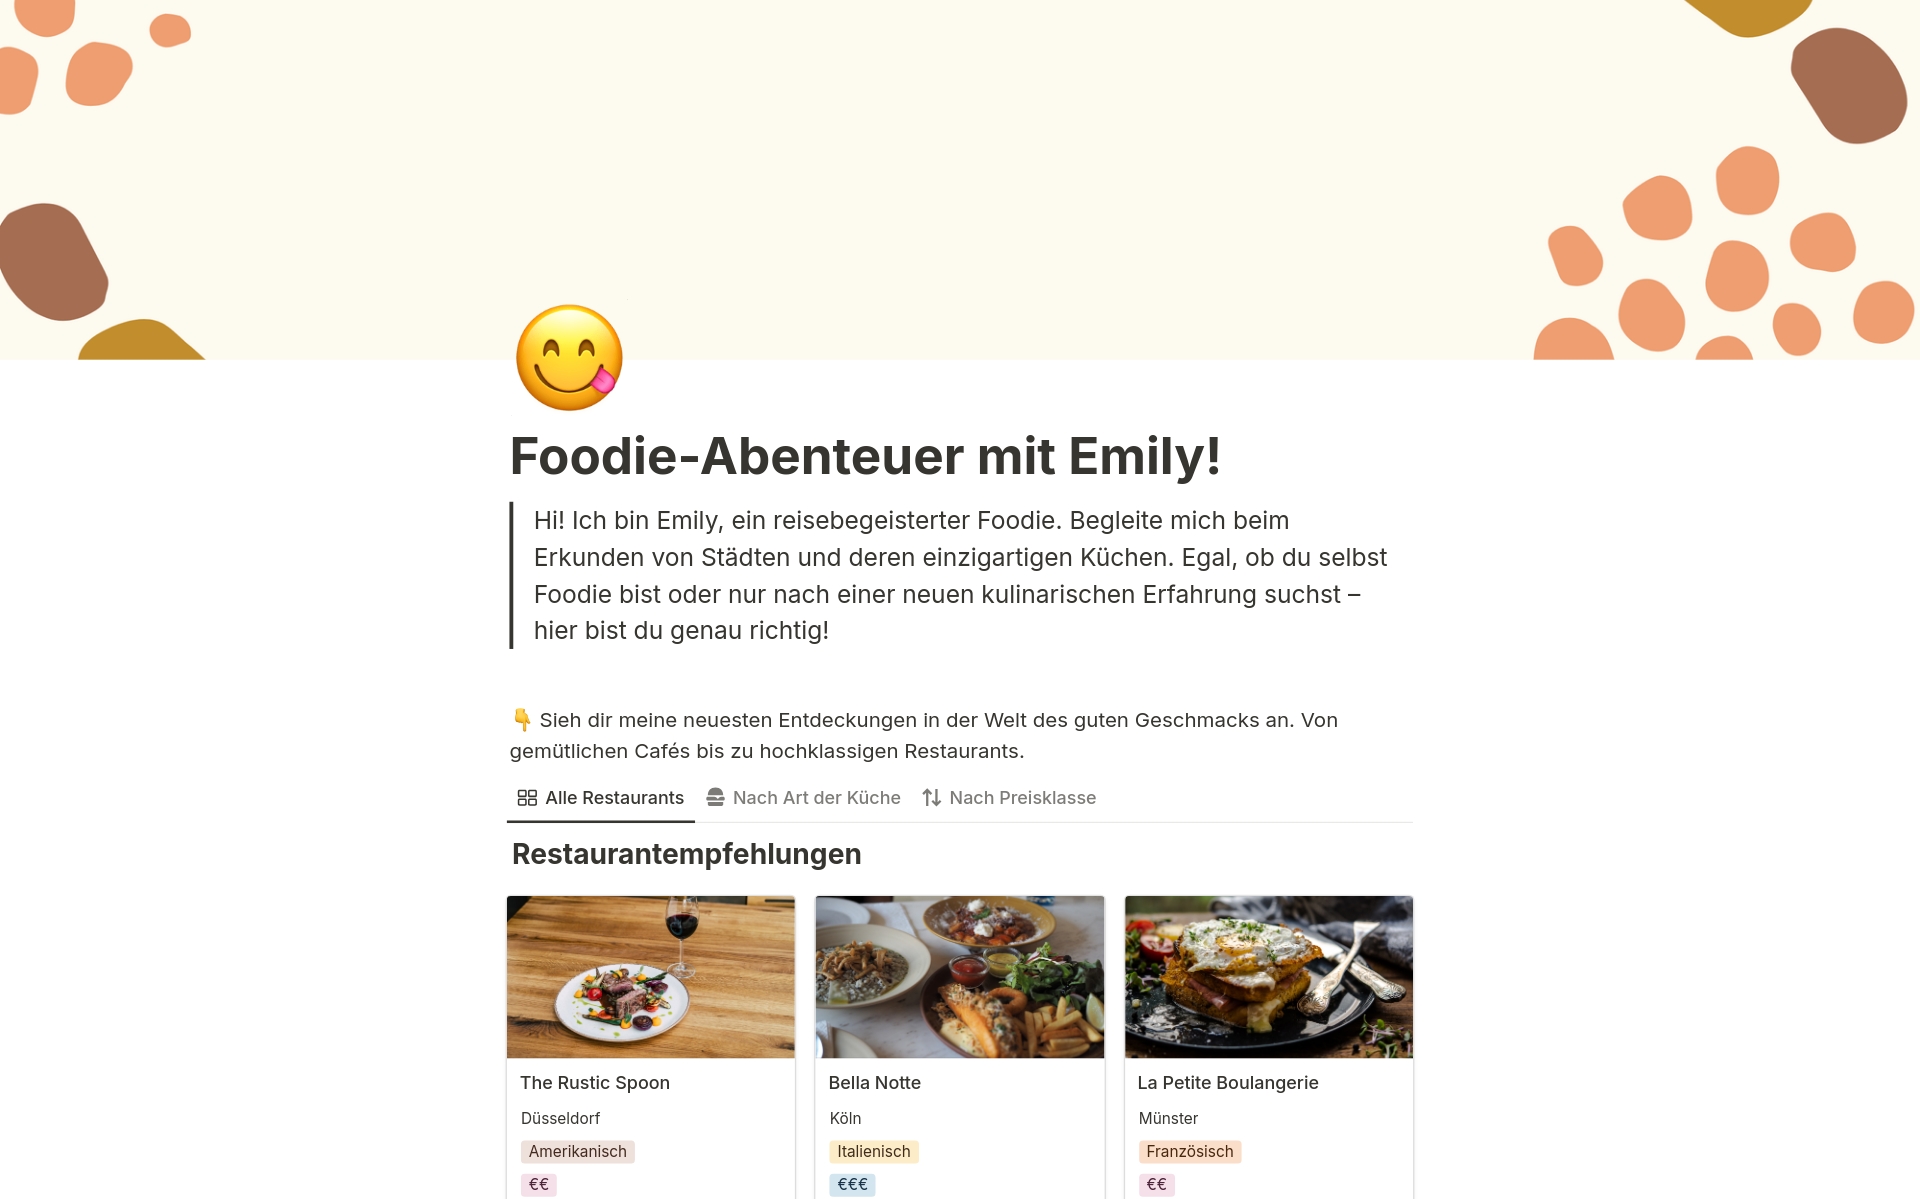 Eine Vorlage für eine Website mit Restaurantempfehlungen, auf der Foodies ihre Lieblingslokale und Produkte vorstellen können, die jeder mal ausprobiert haben muss.